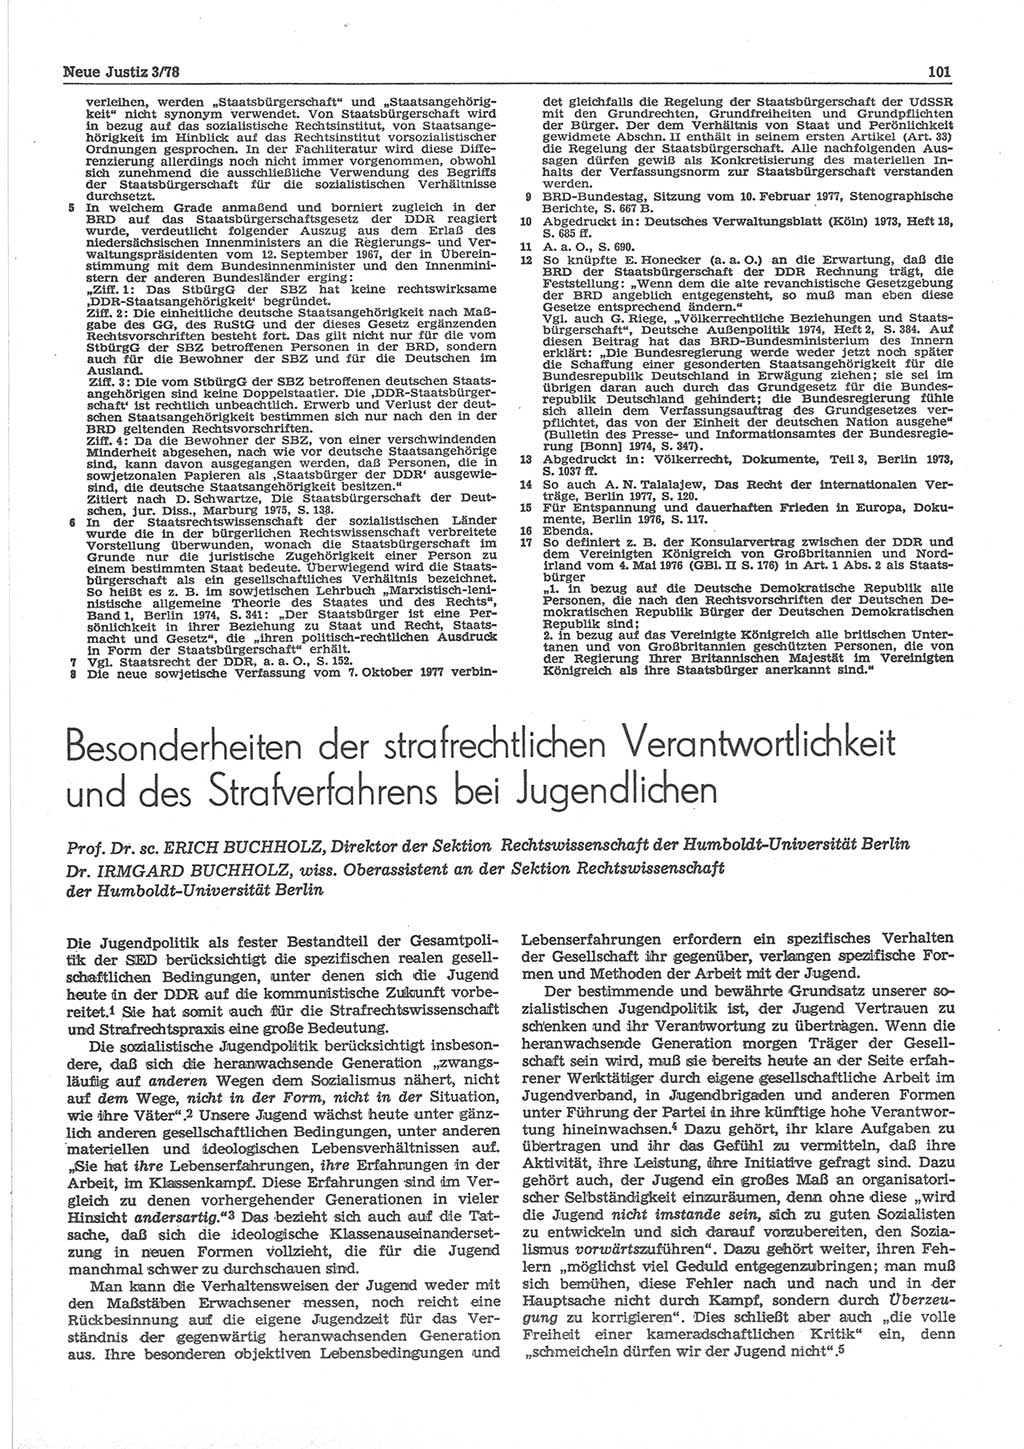 Neue Justiz (NJ), Zeitschrift für sozialistisches Recht und Gesetzlichkeit [Deutsche Demokratische Republik (DDR)], 32. Jahrgang 1978, Seite 101 (NJ DDR 1978, S. 101)